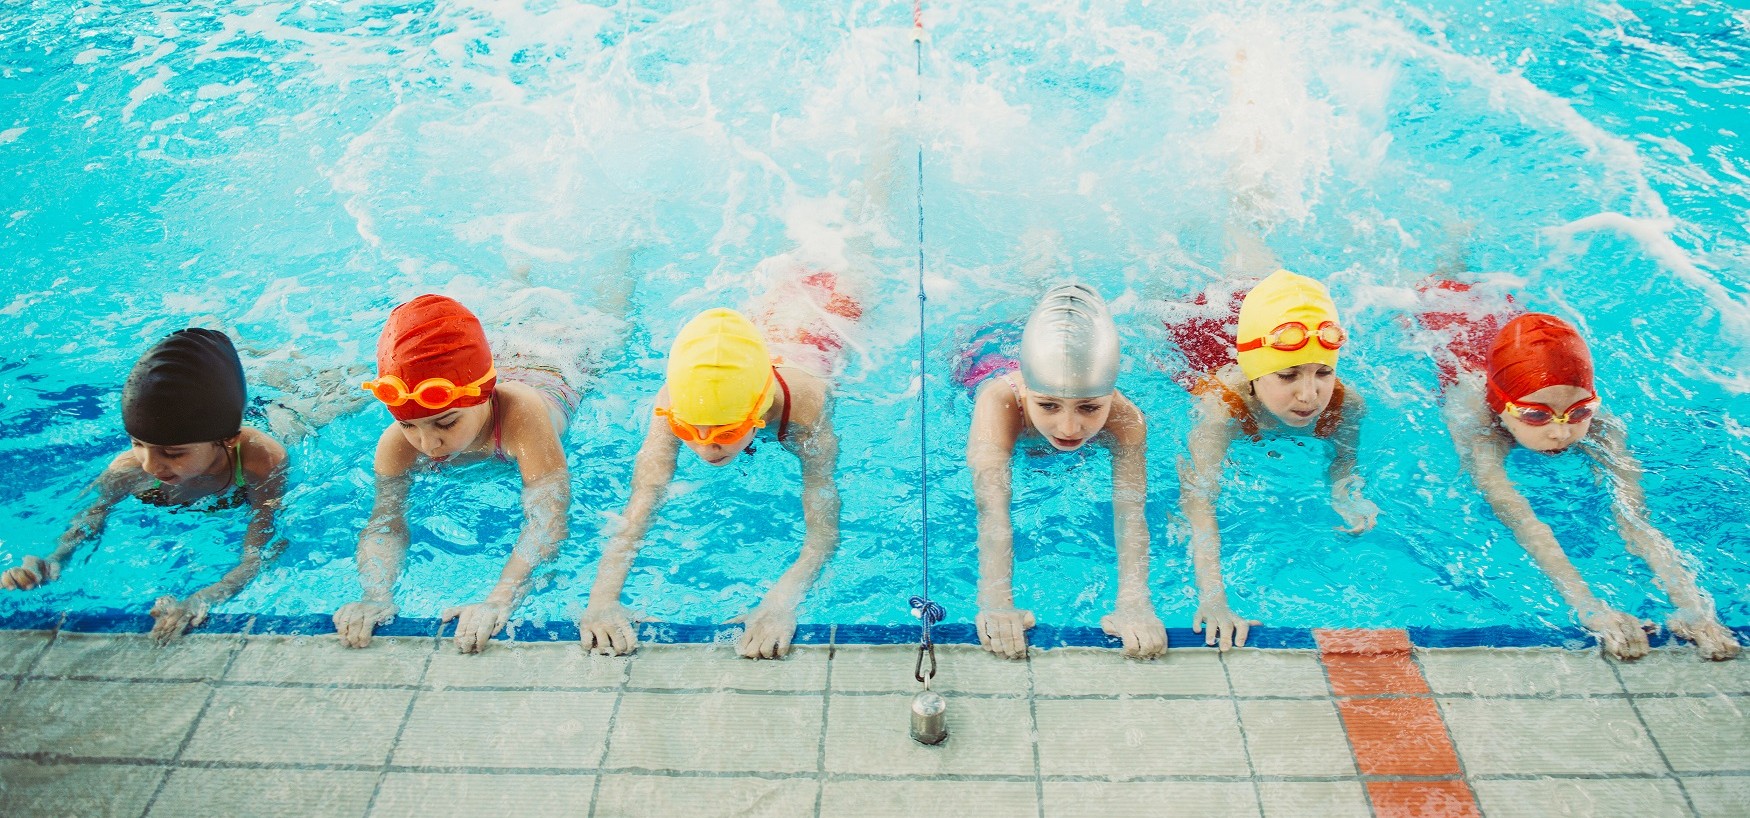 Игры в бассейне для взрослых девочек